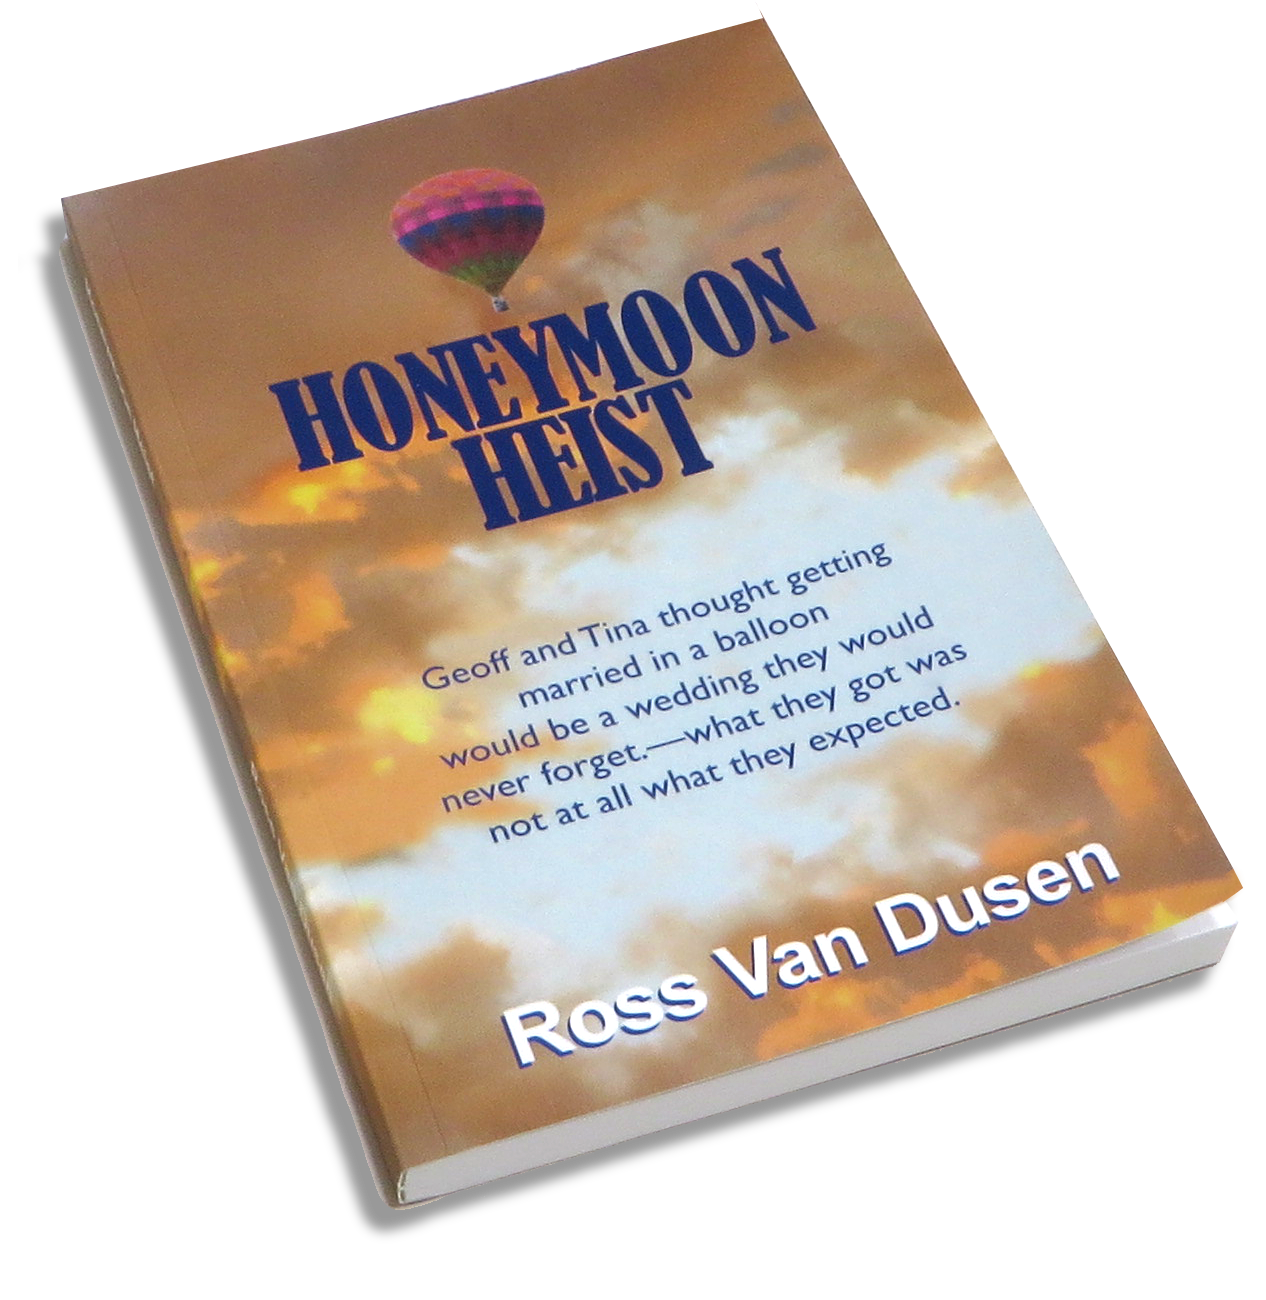 Honeymoon Heist book